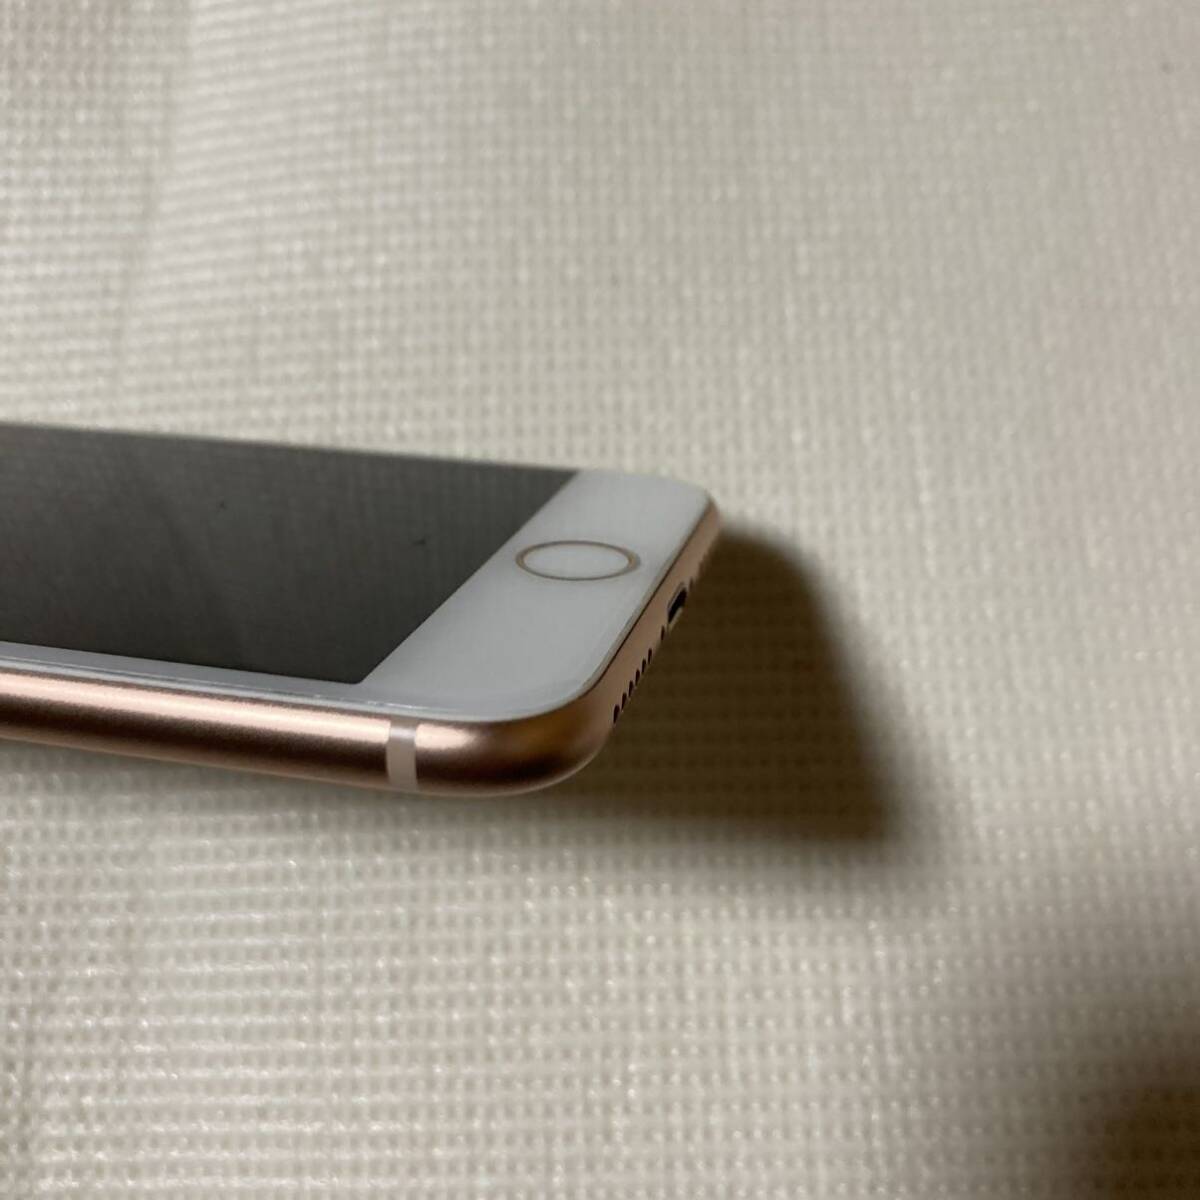 送料無料 超美品 SIMフリー iPhone8 256GB ゴールド バッテリー最大容量100% SIMロック解除済 付属品_画像4